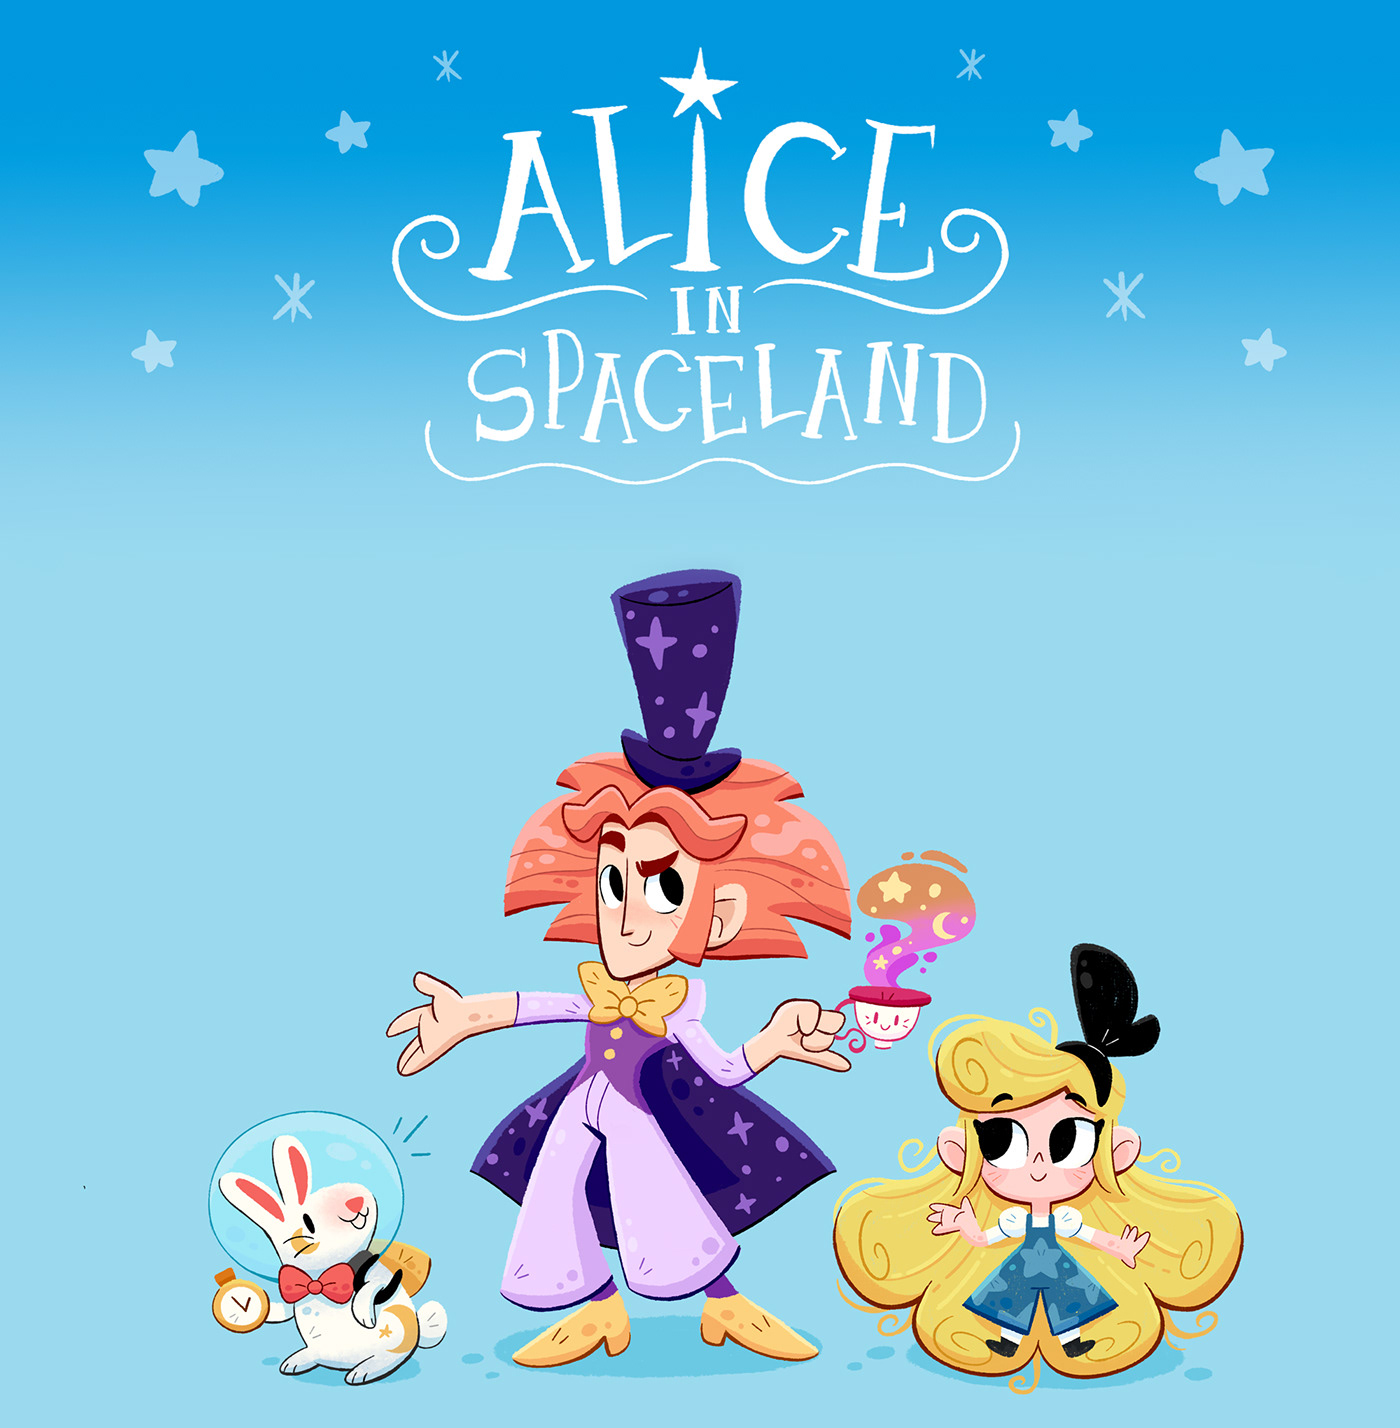 alice in wonderland Character design  digital illustration kidlit kids illustration children's book Picture book graphic design  Space  kids